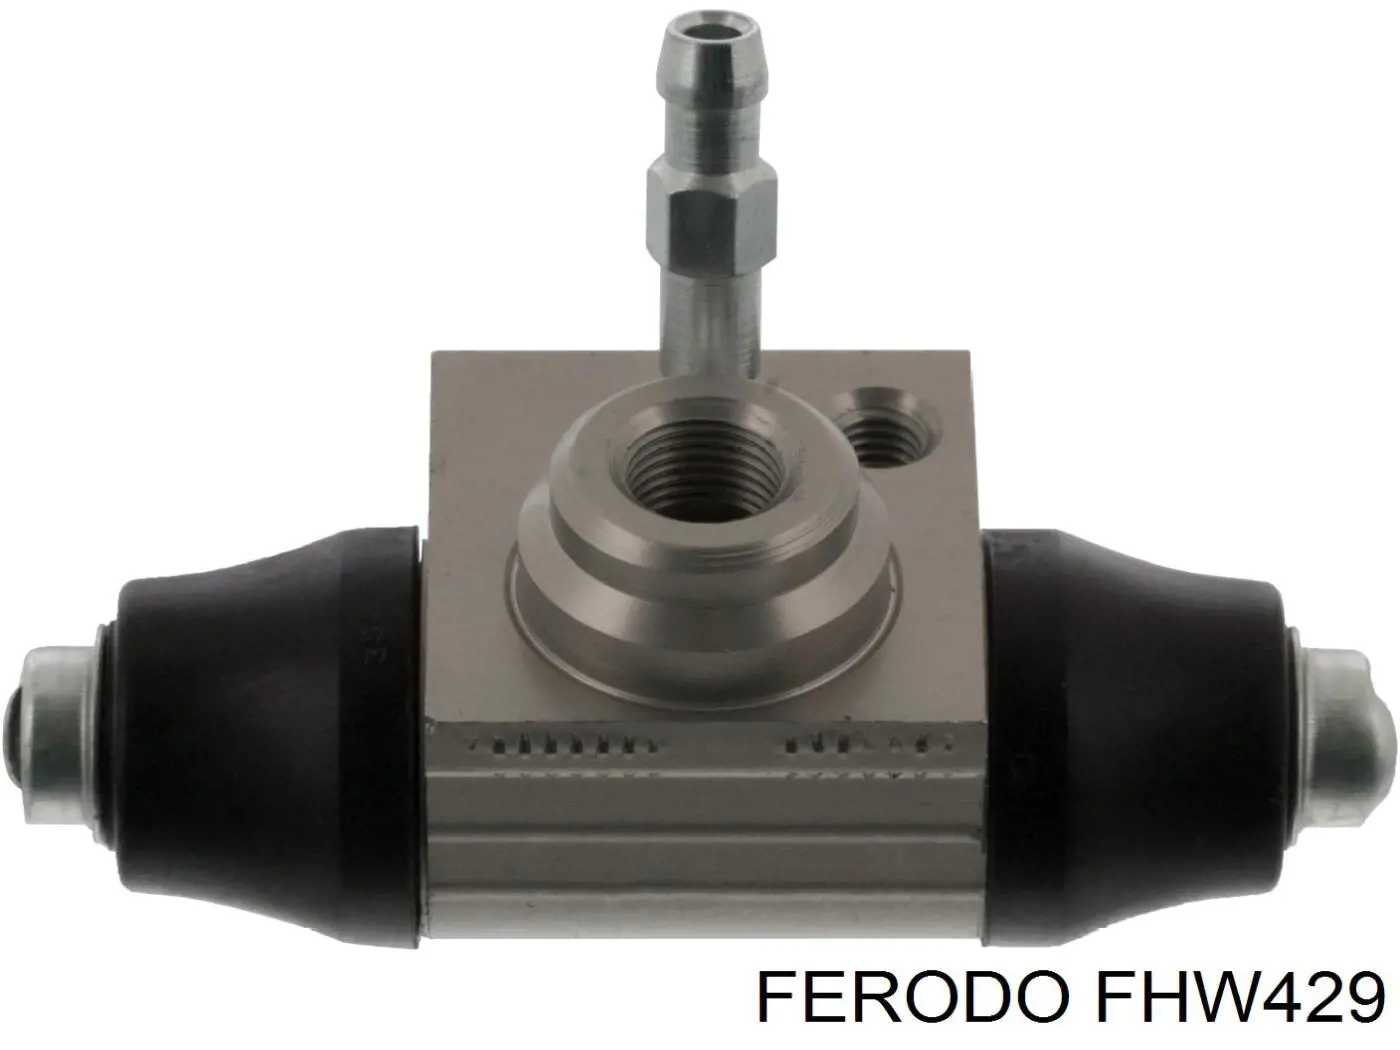 FHW429 Ferodo цилиндр тормозной колесный рабочий задний